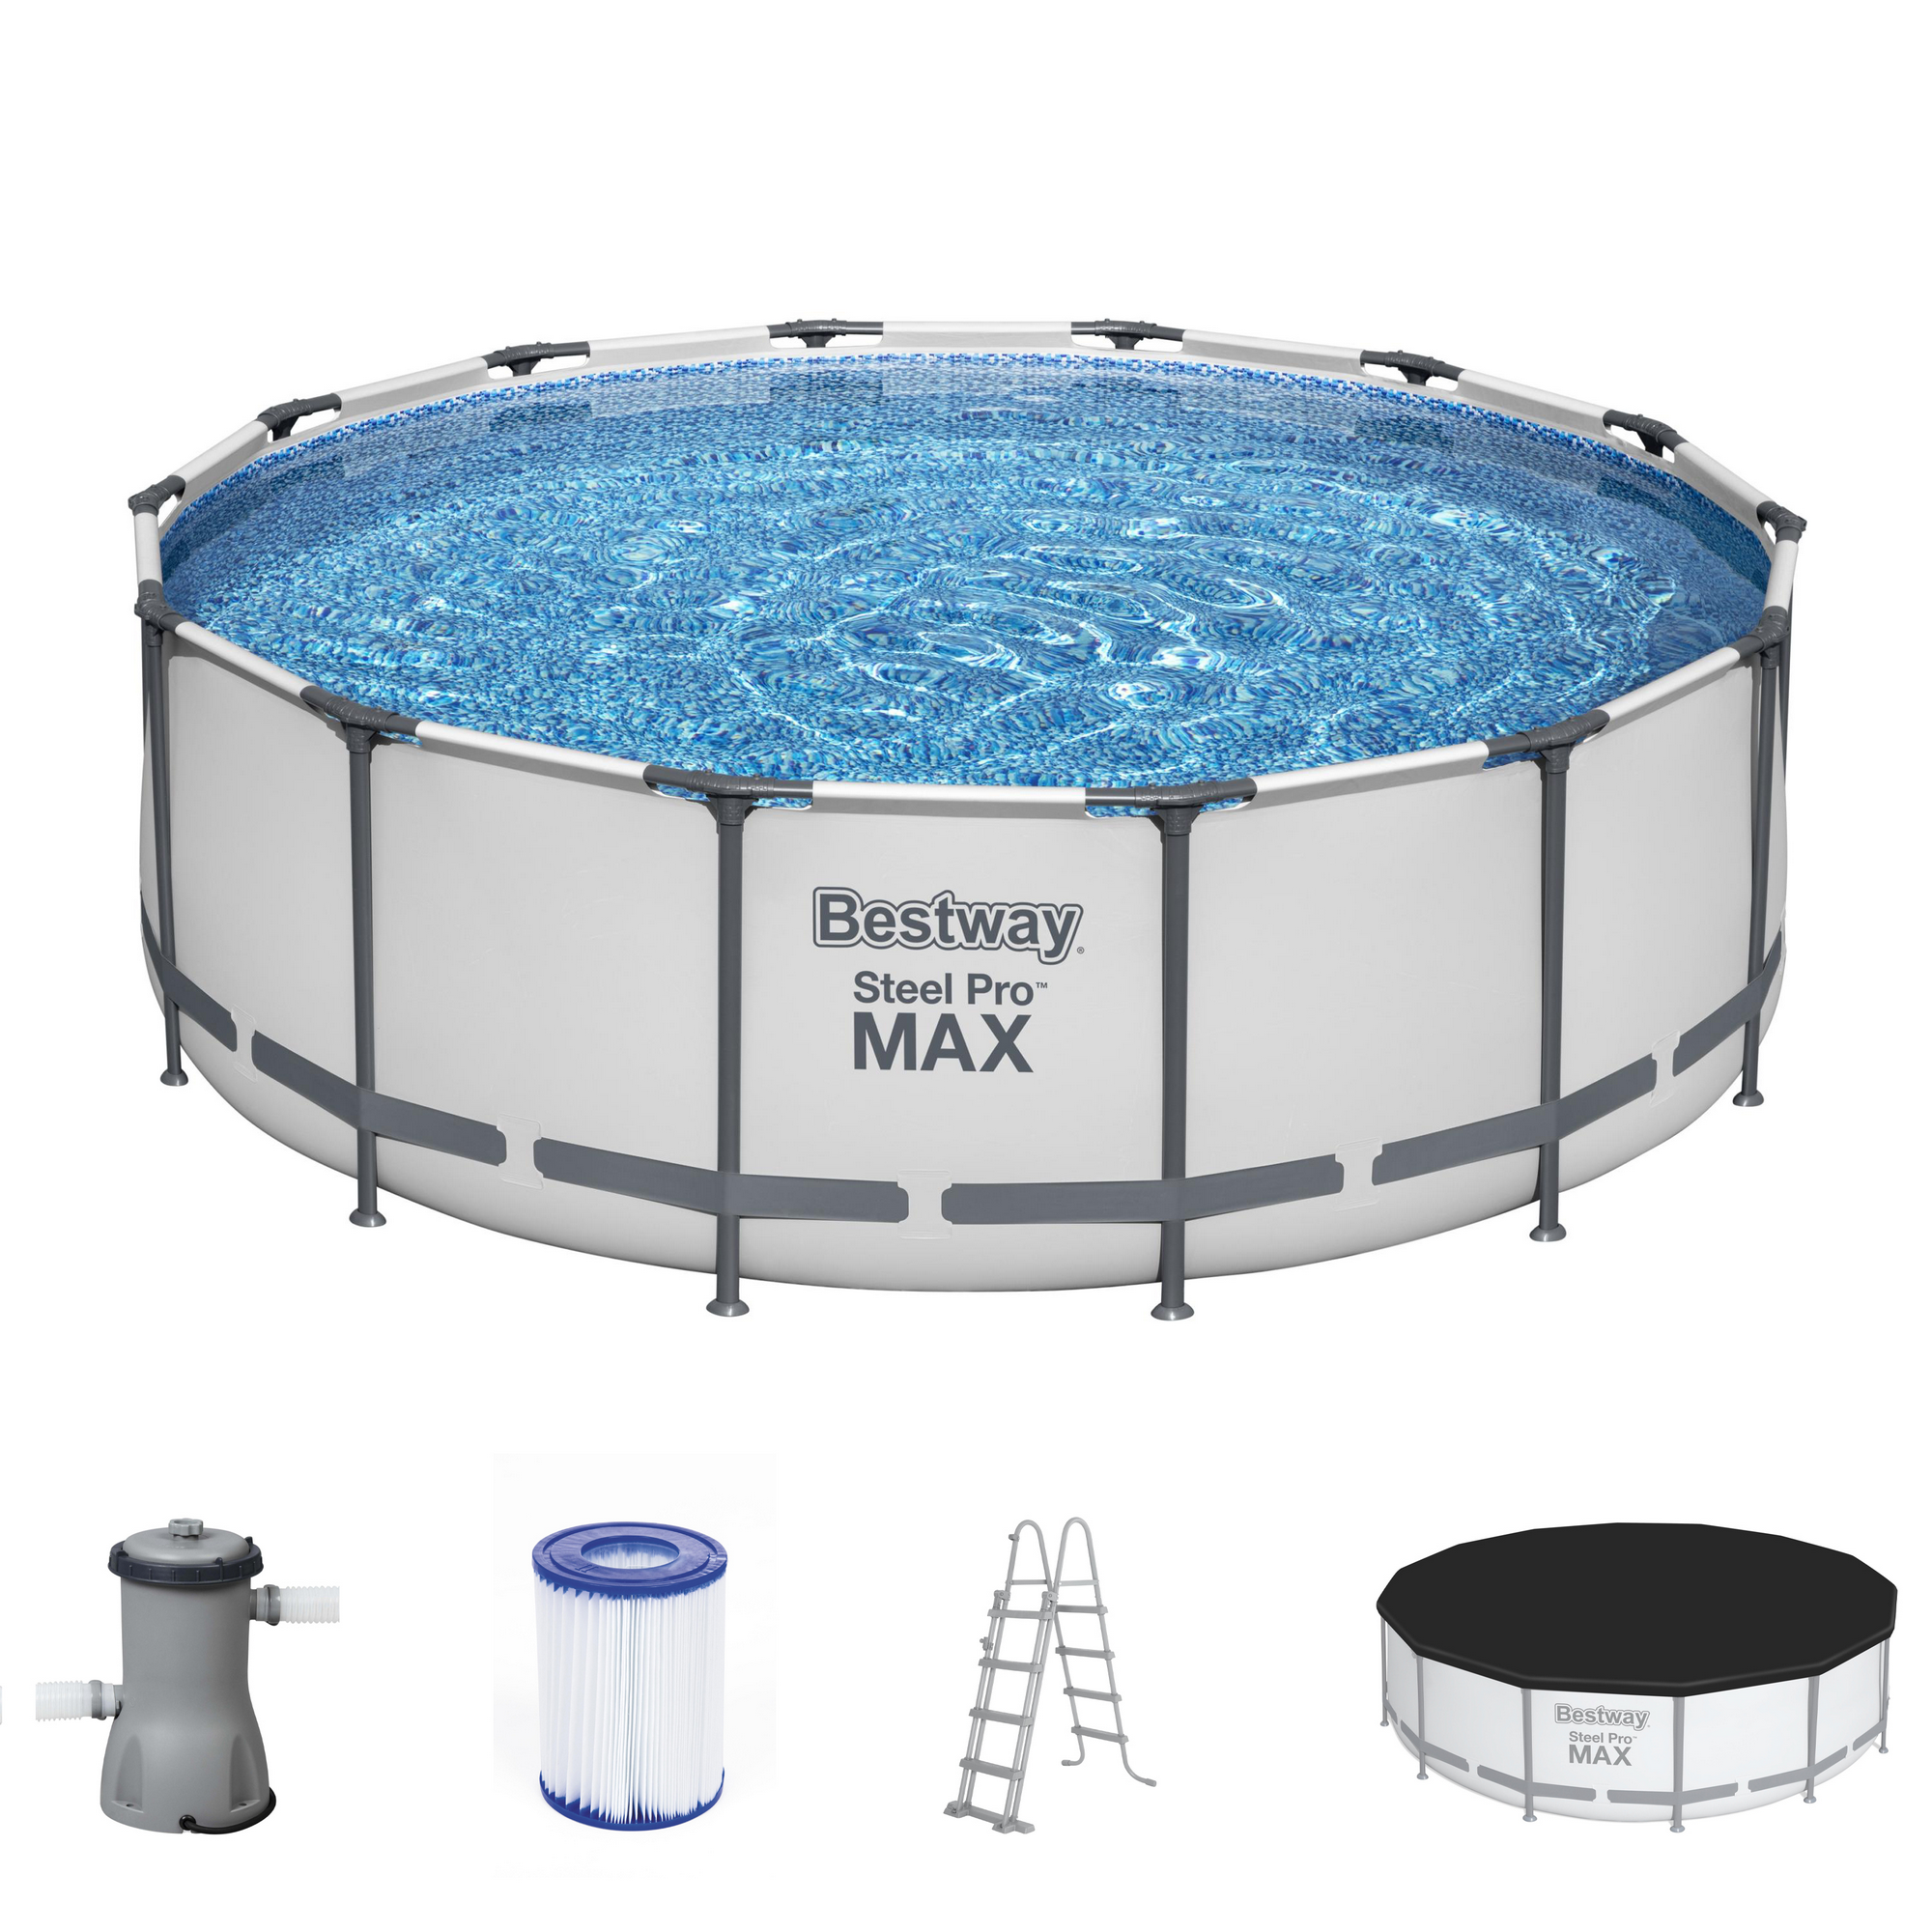 Frame-Pool-Set 'Steel Pro Max' Ø 427 x 122 cm mit Sicherheitsleiter und Kartuschenfilter + product picture